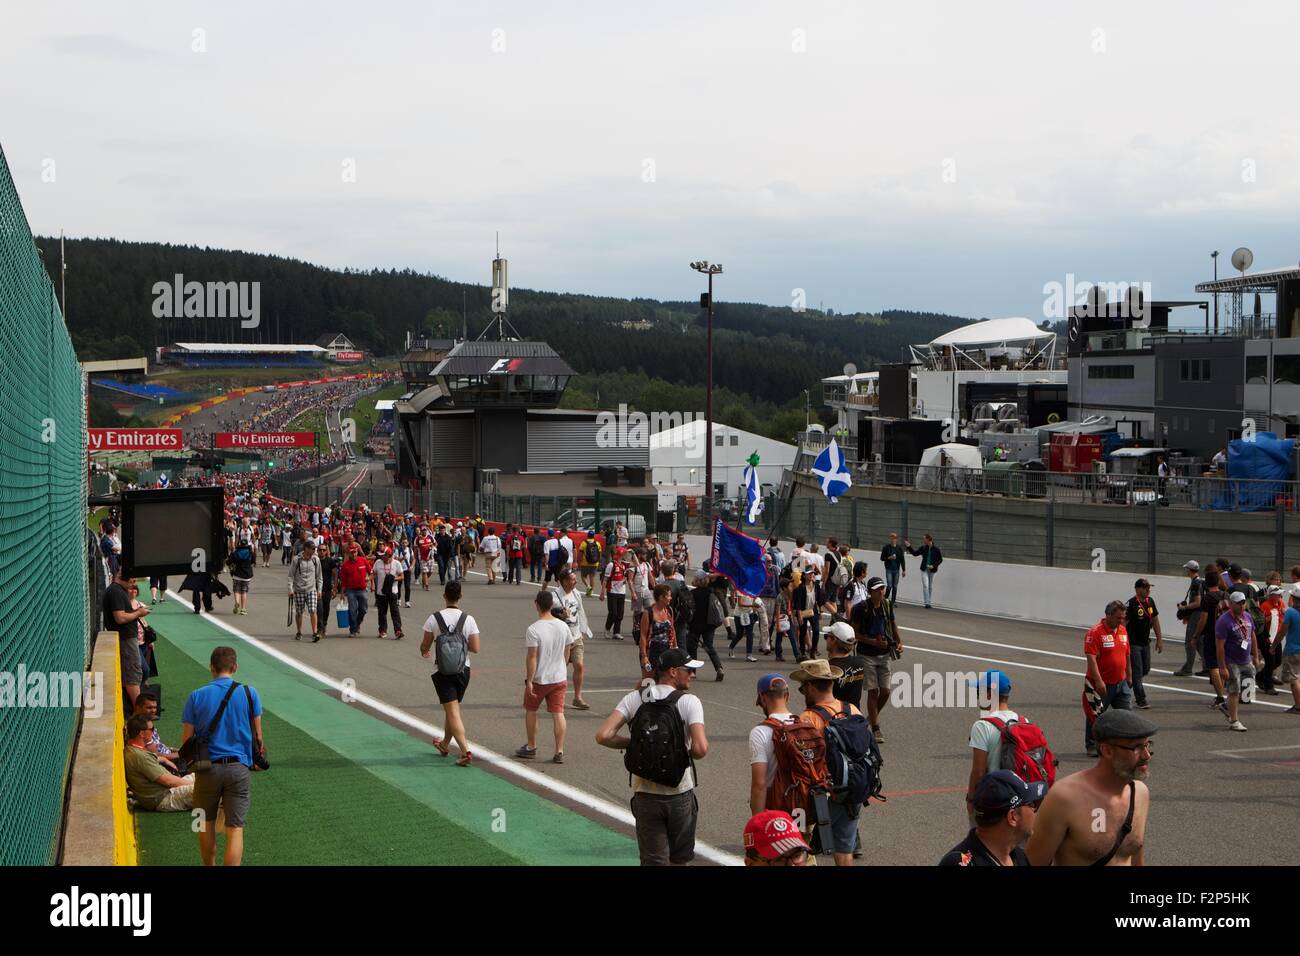 Formule 1 2015 Grand Prix de Belgique de Shell, Spa. Banque D'Images